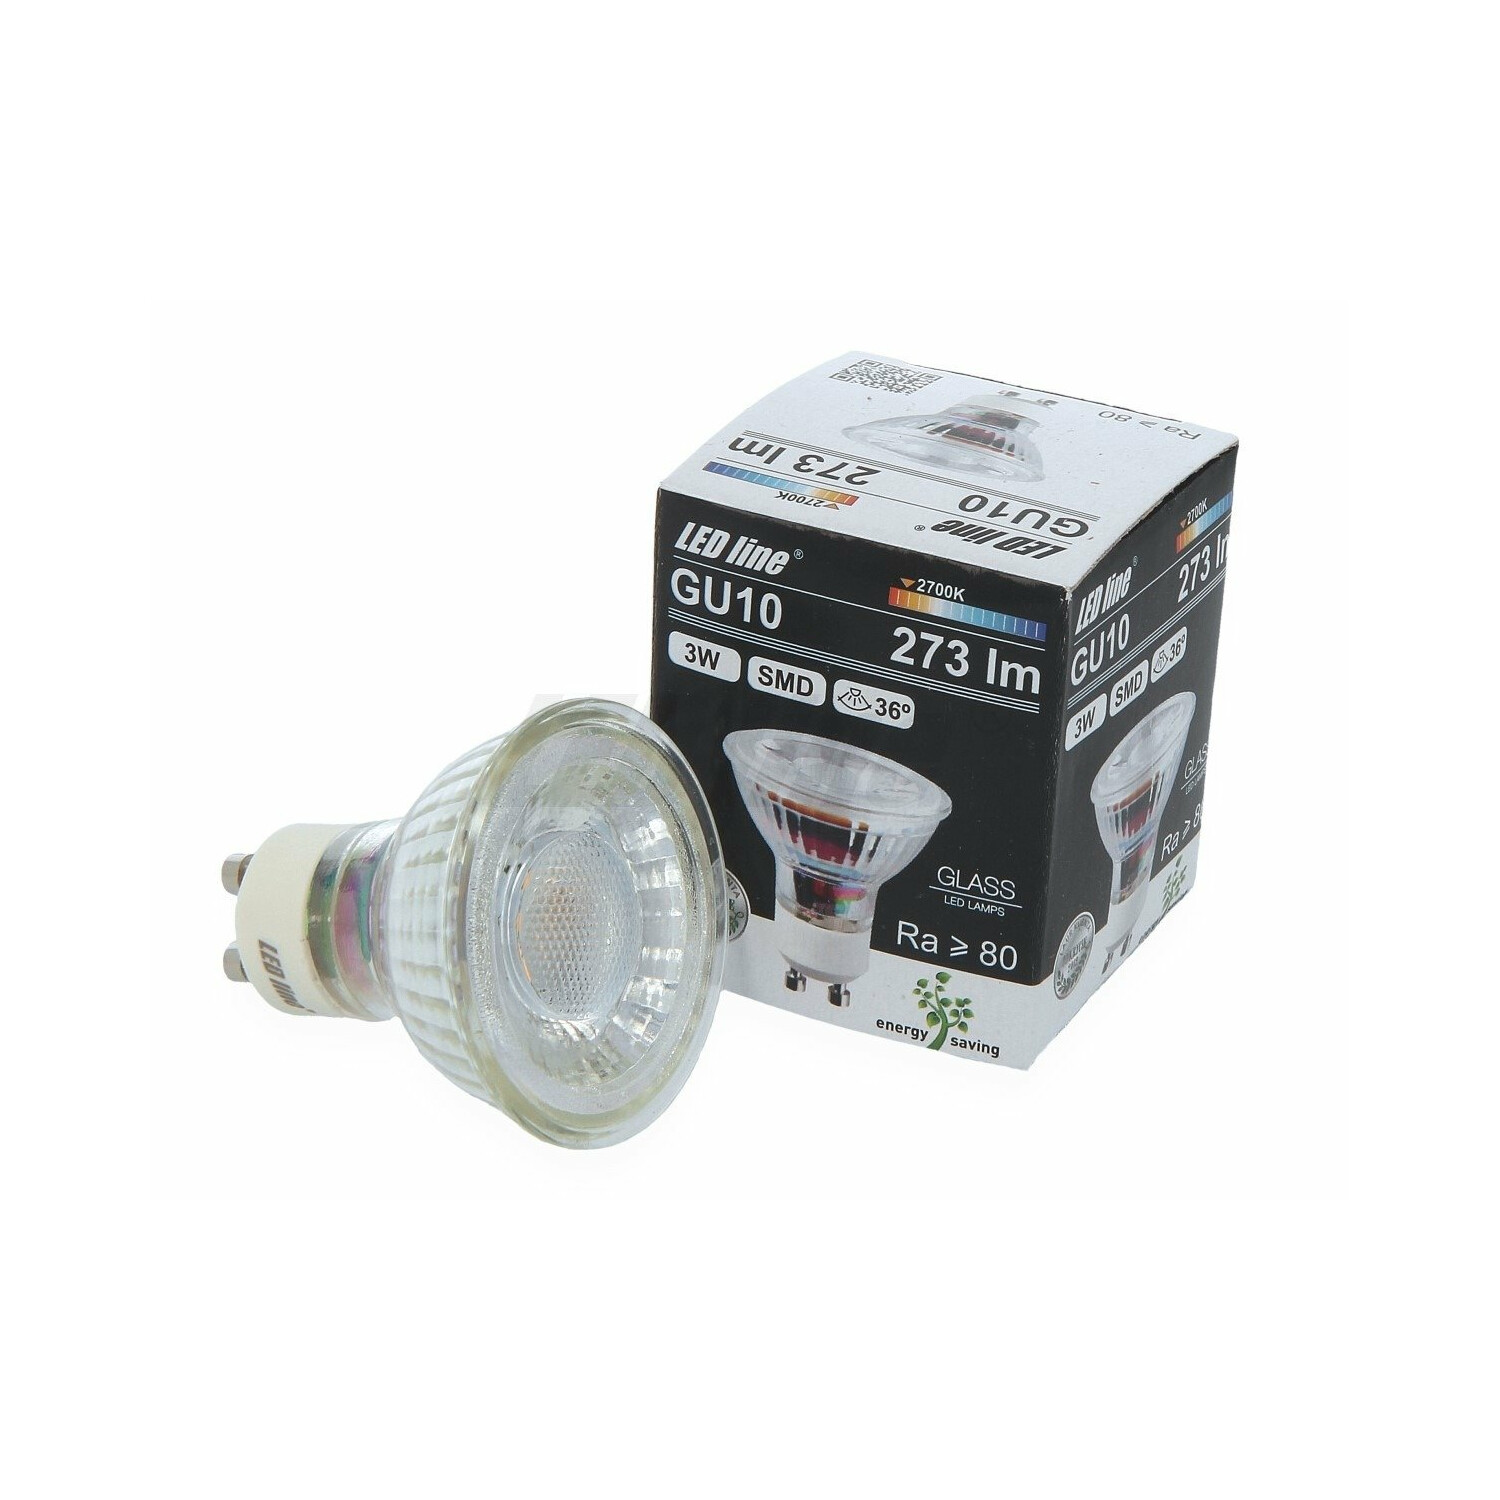 LED LINE 1x GU10 Lumen Warmweiß SMD LED 3W 36° Leuchtmittel 273